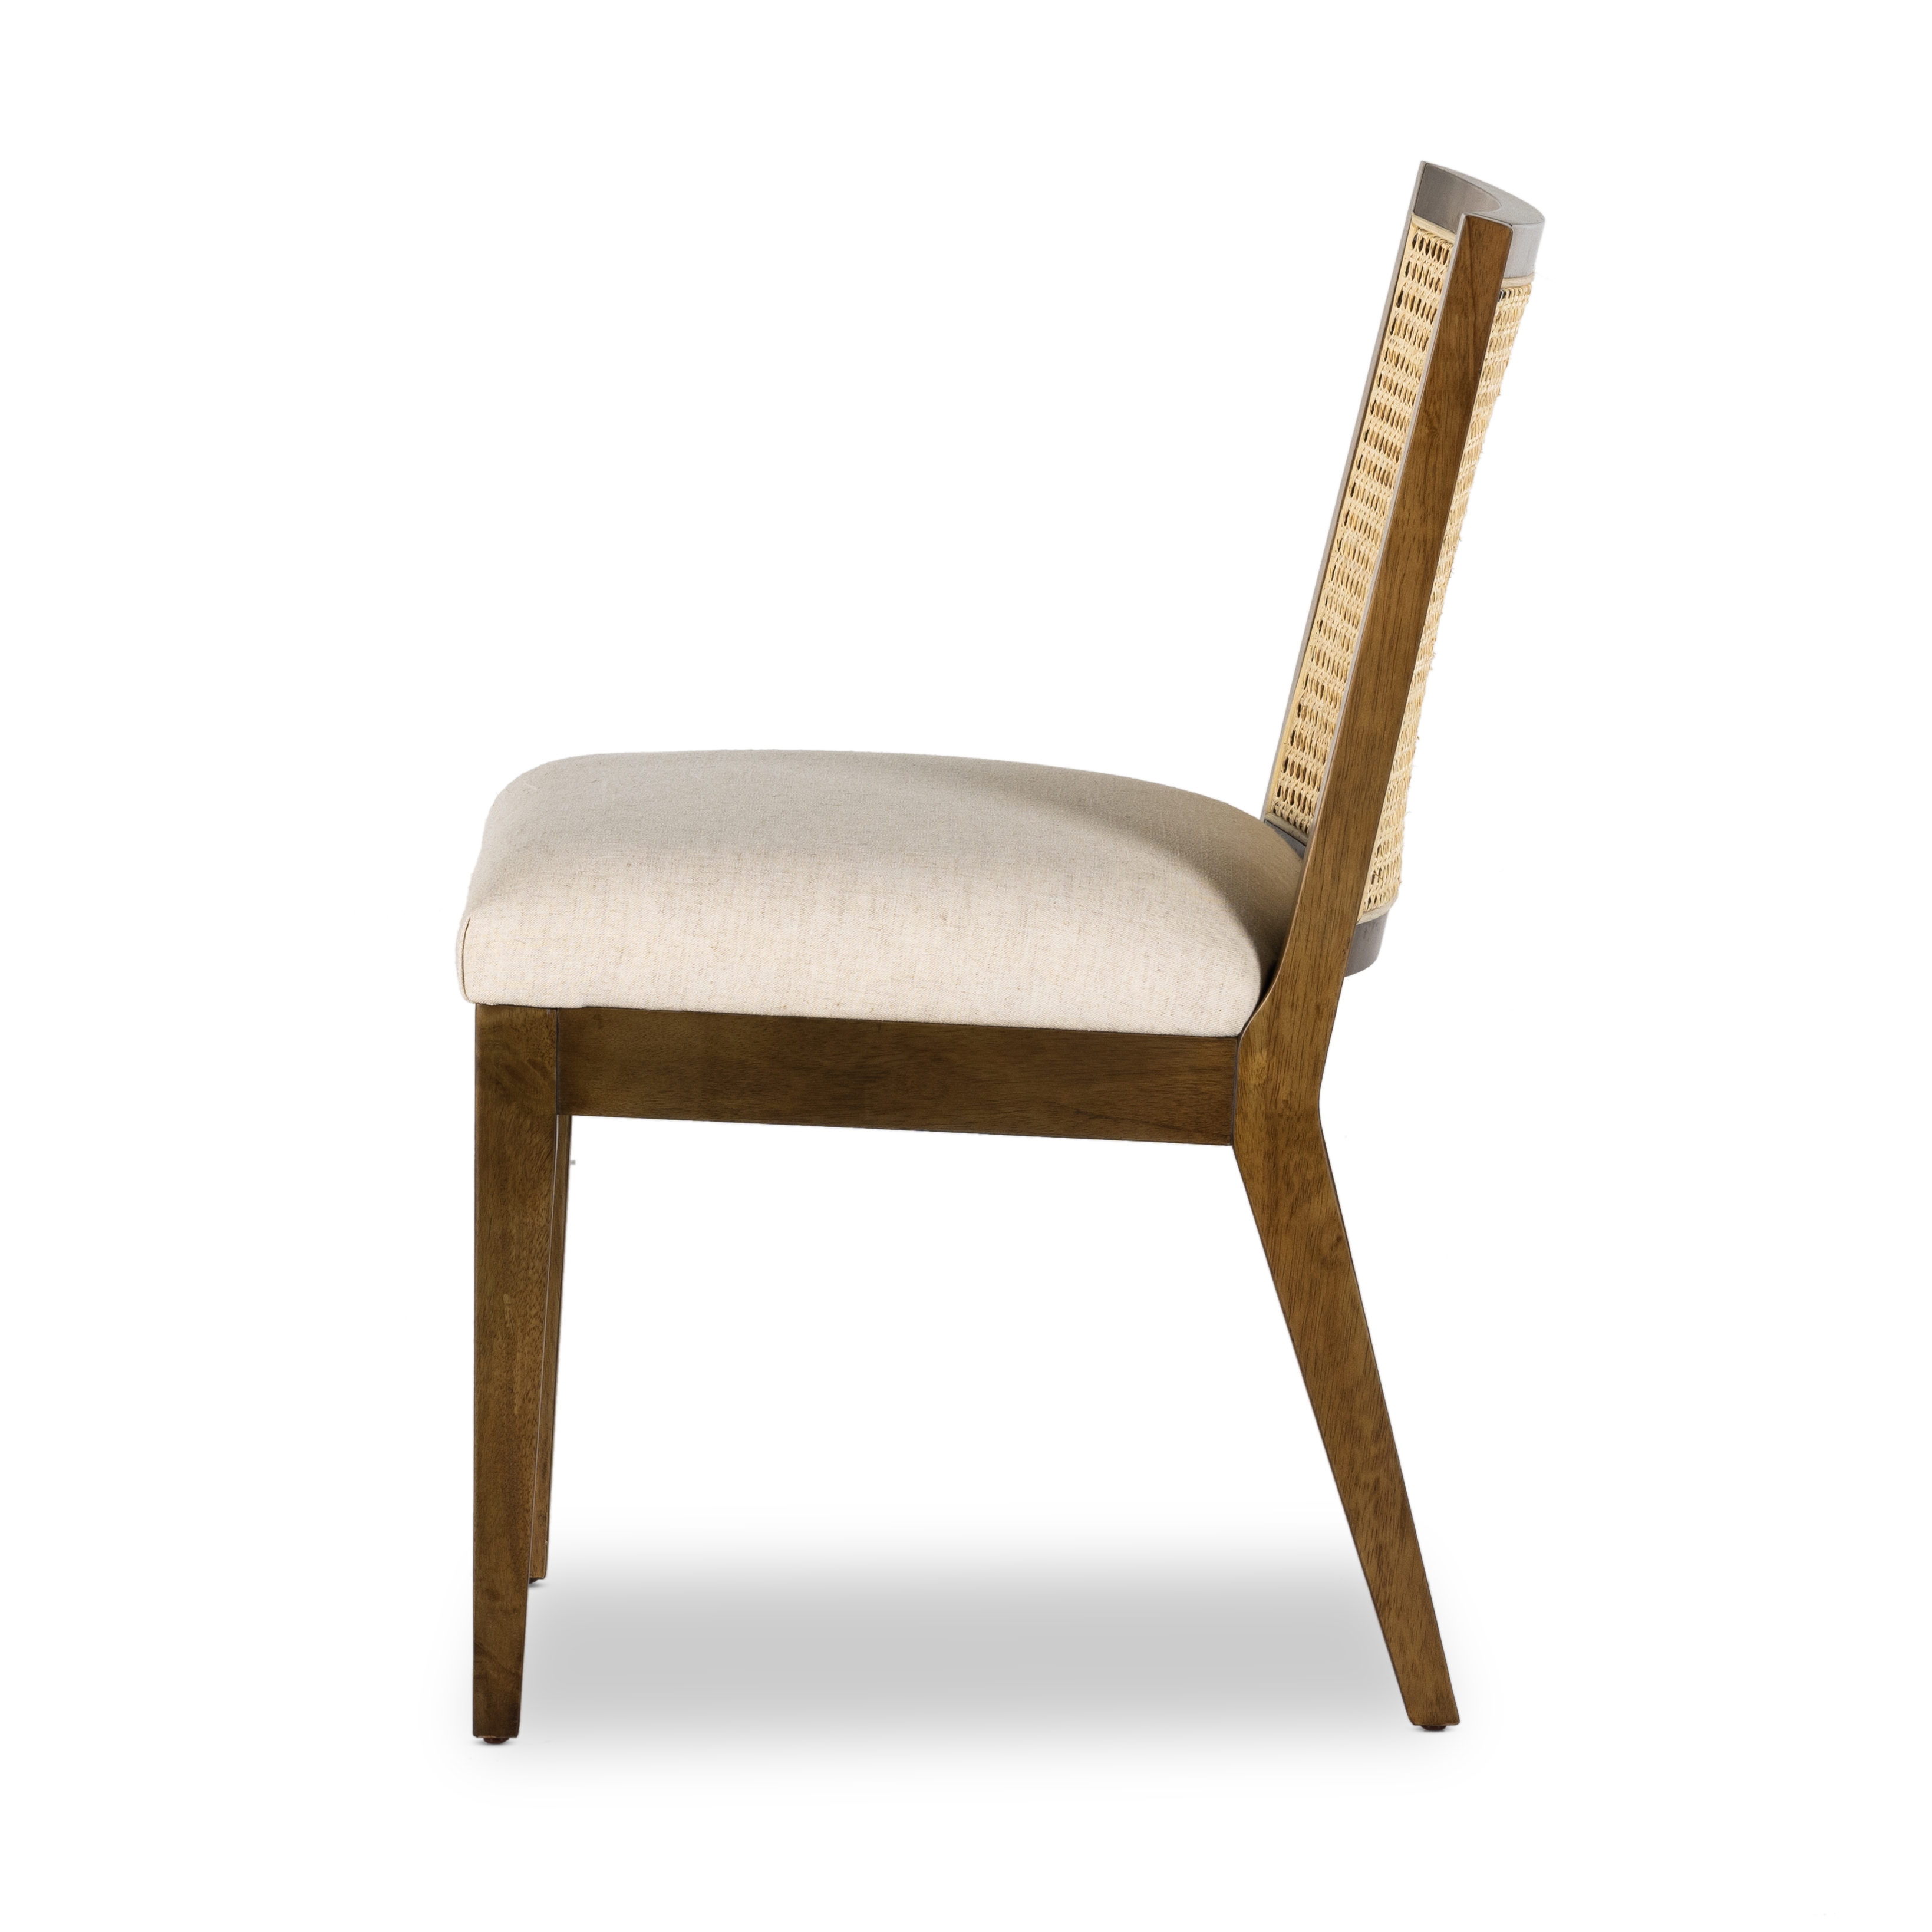 Antonia Armless Dining Chair-Toastd Prwd - Image 3